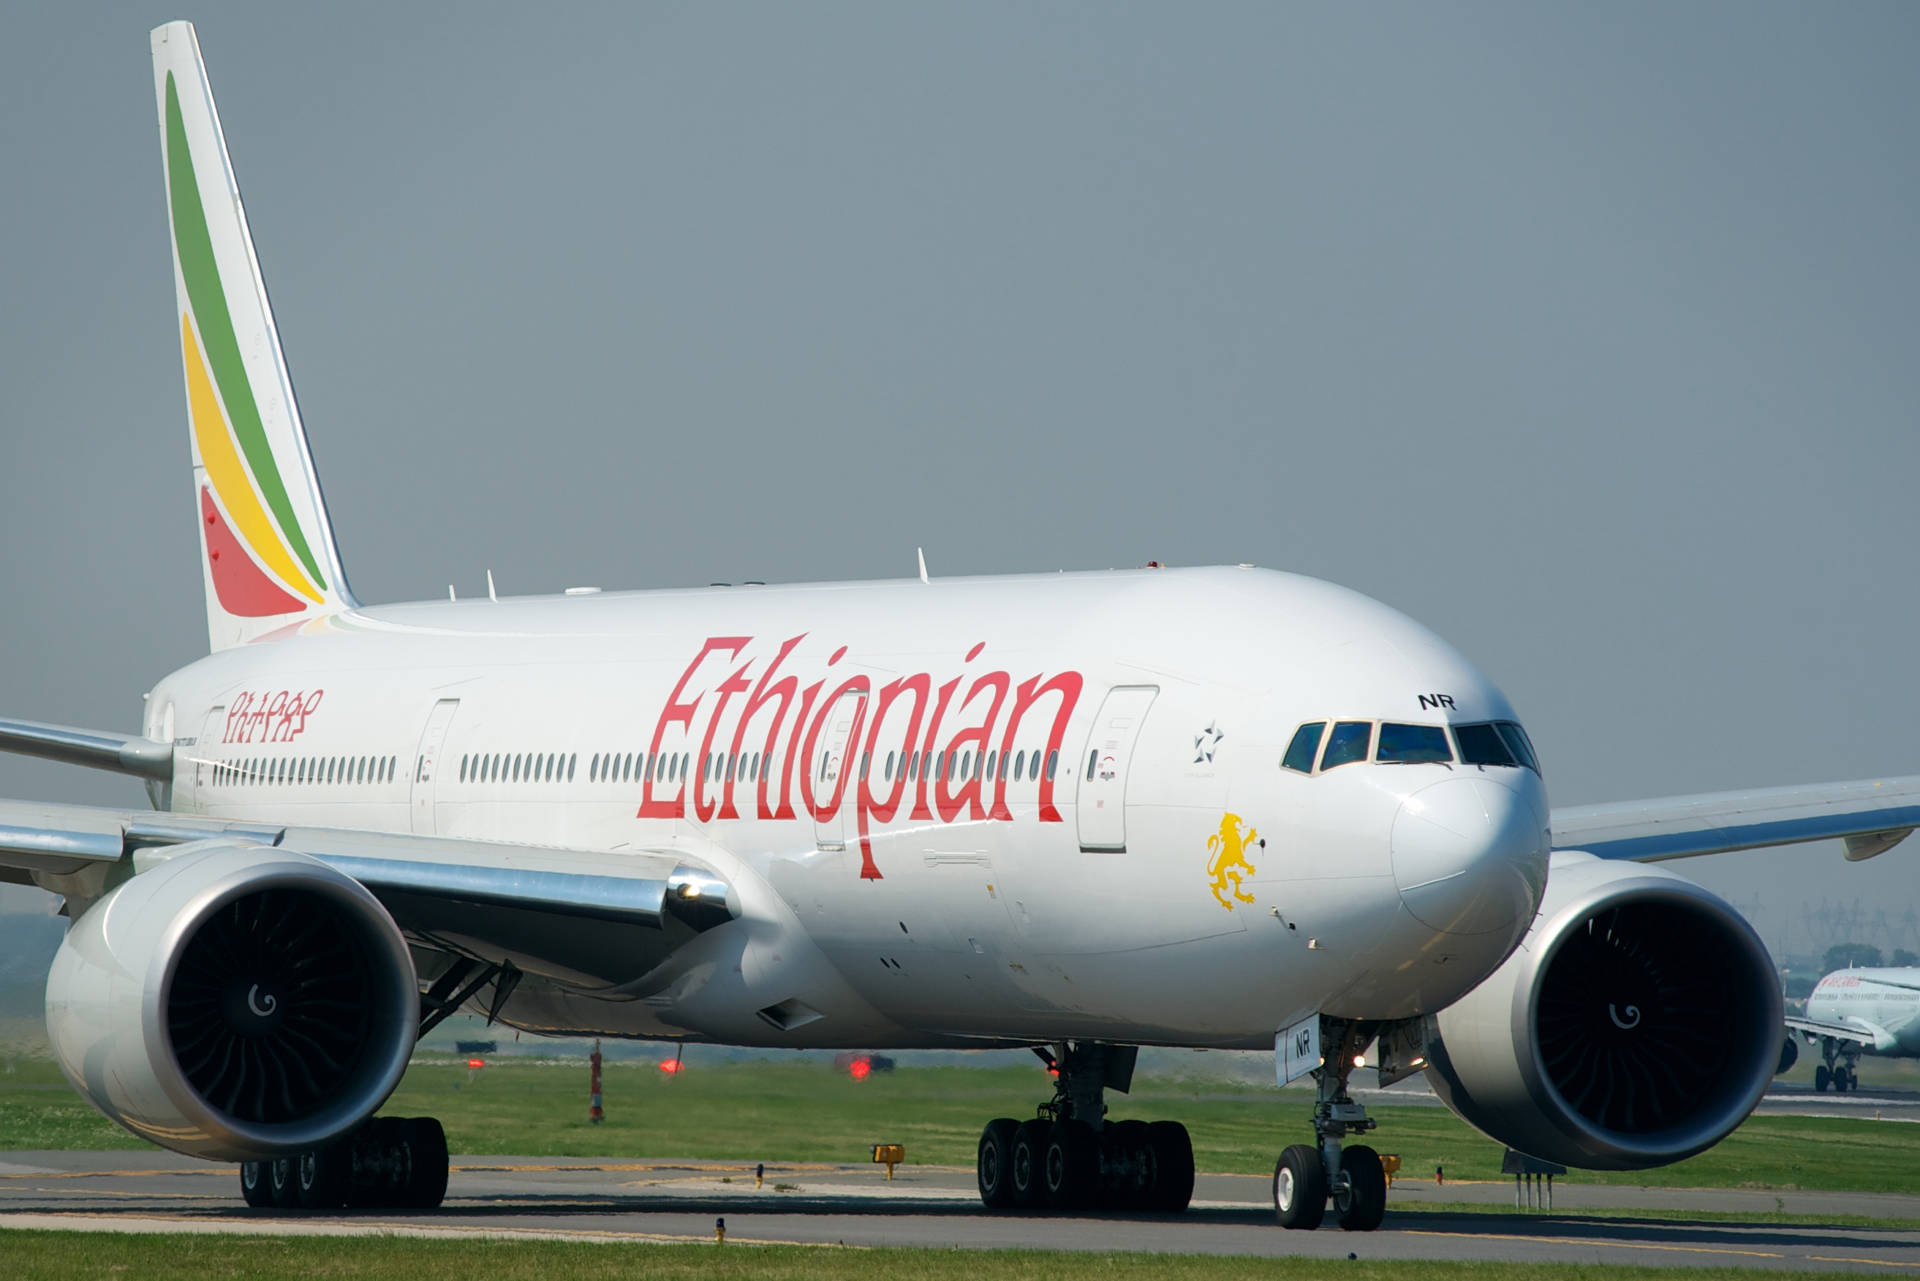 Wallpaper - Etiopiske Lufthavns hvide luftfartøj tapet Wallpaper